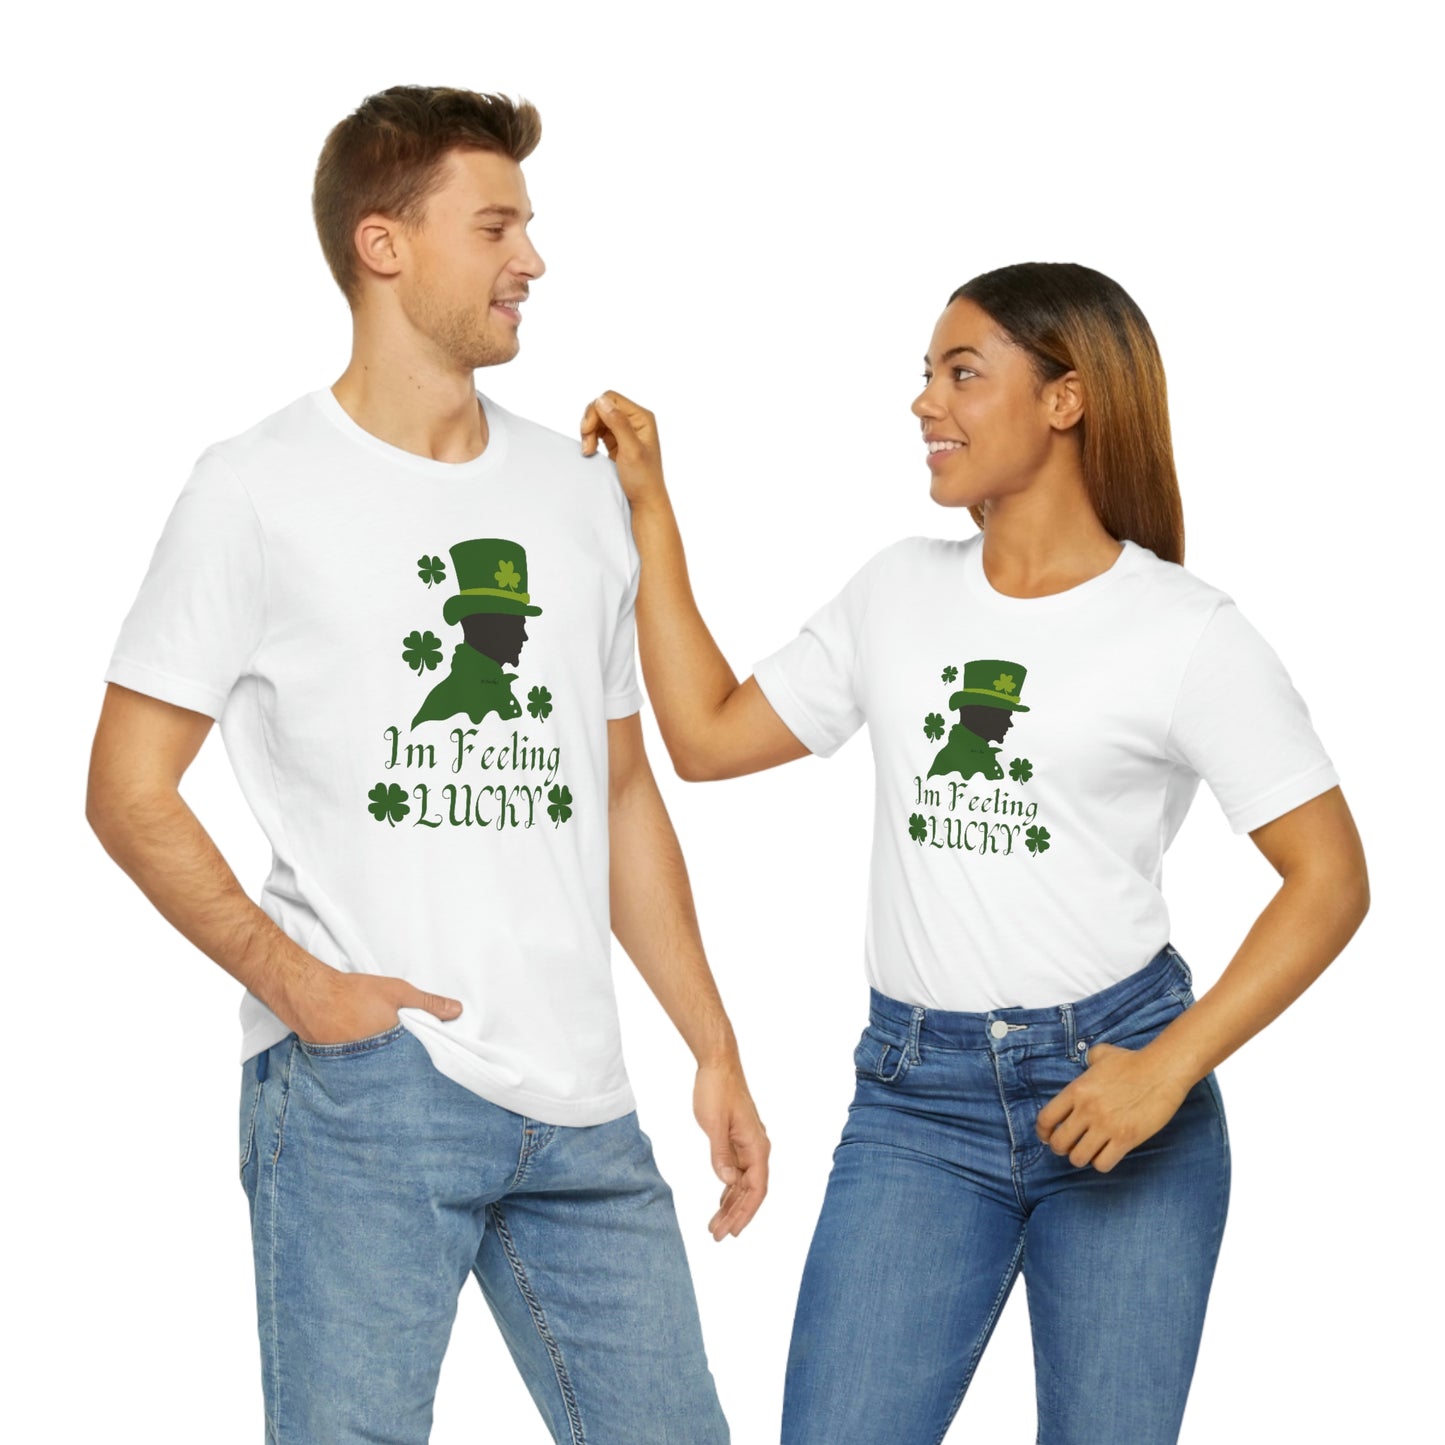 I'm Feeling Lucky St Patricks T-Shirt Company | EDGY T-Shirt| Funny St Patricks Day Irish unisex Jersey Short Sleeve Tee